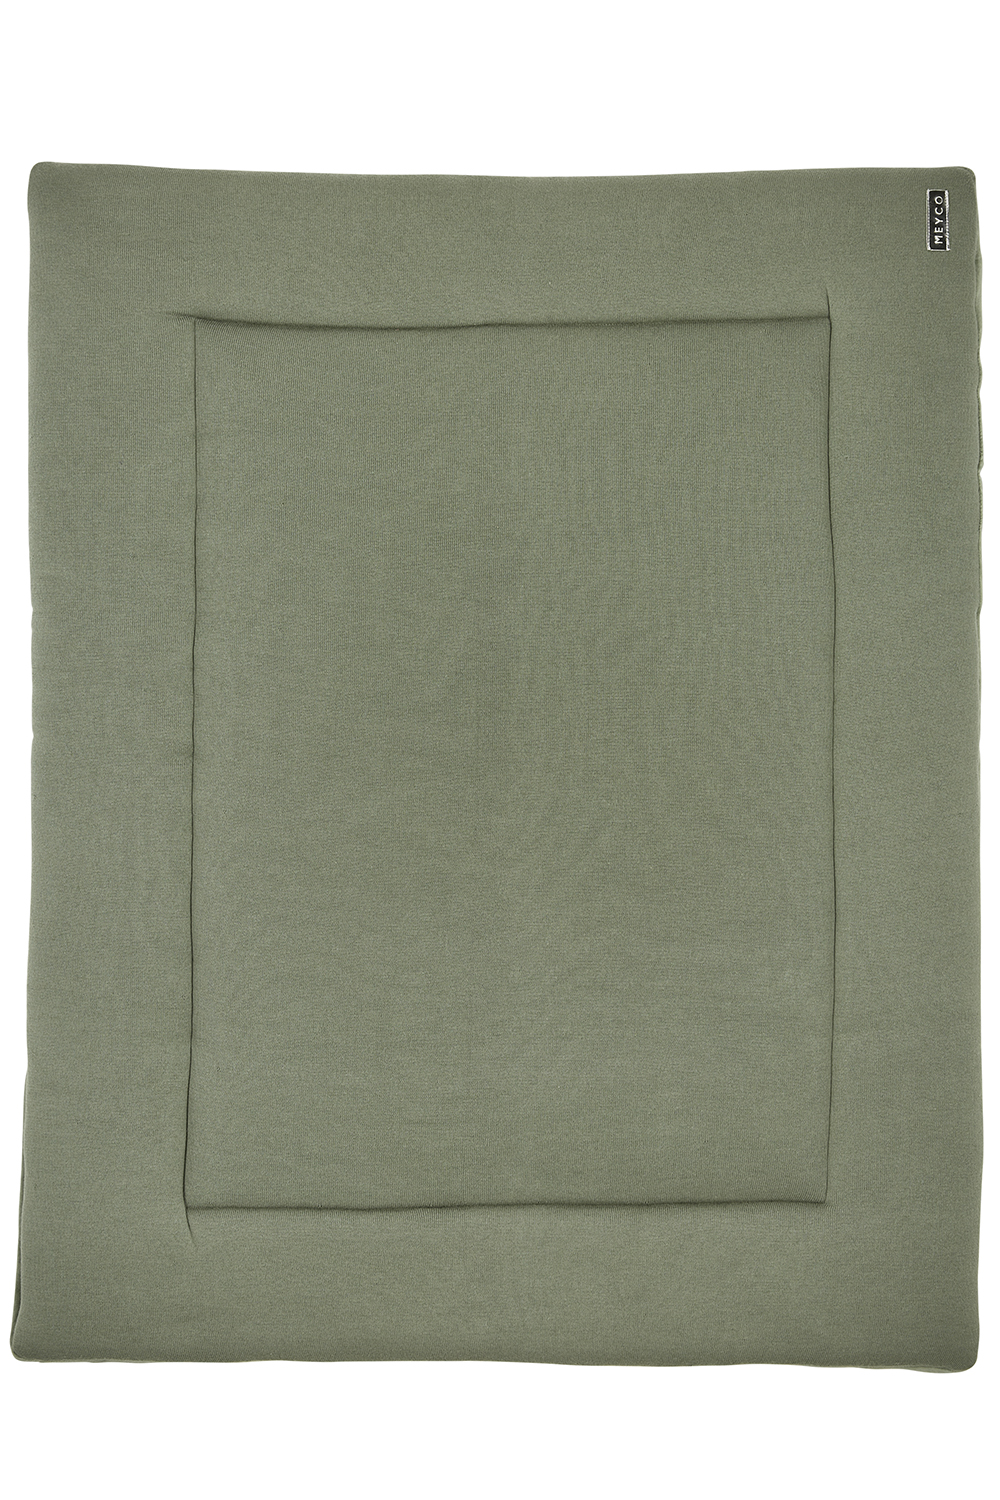 Playpen mattress Knit Basic velvet - forest green - 77x97cm